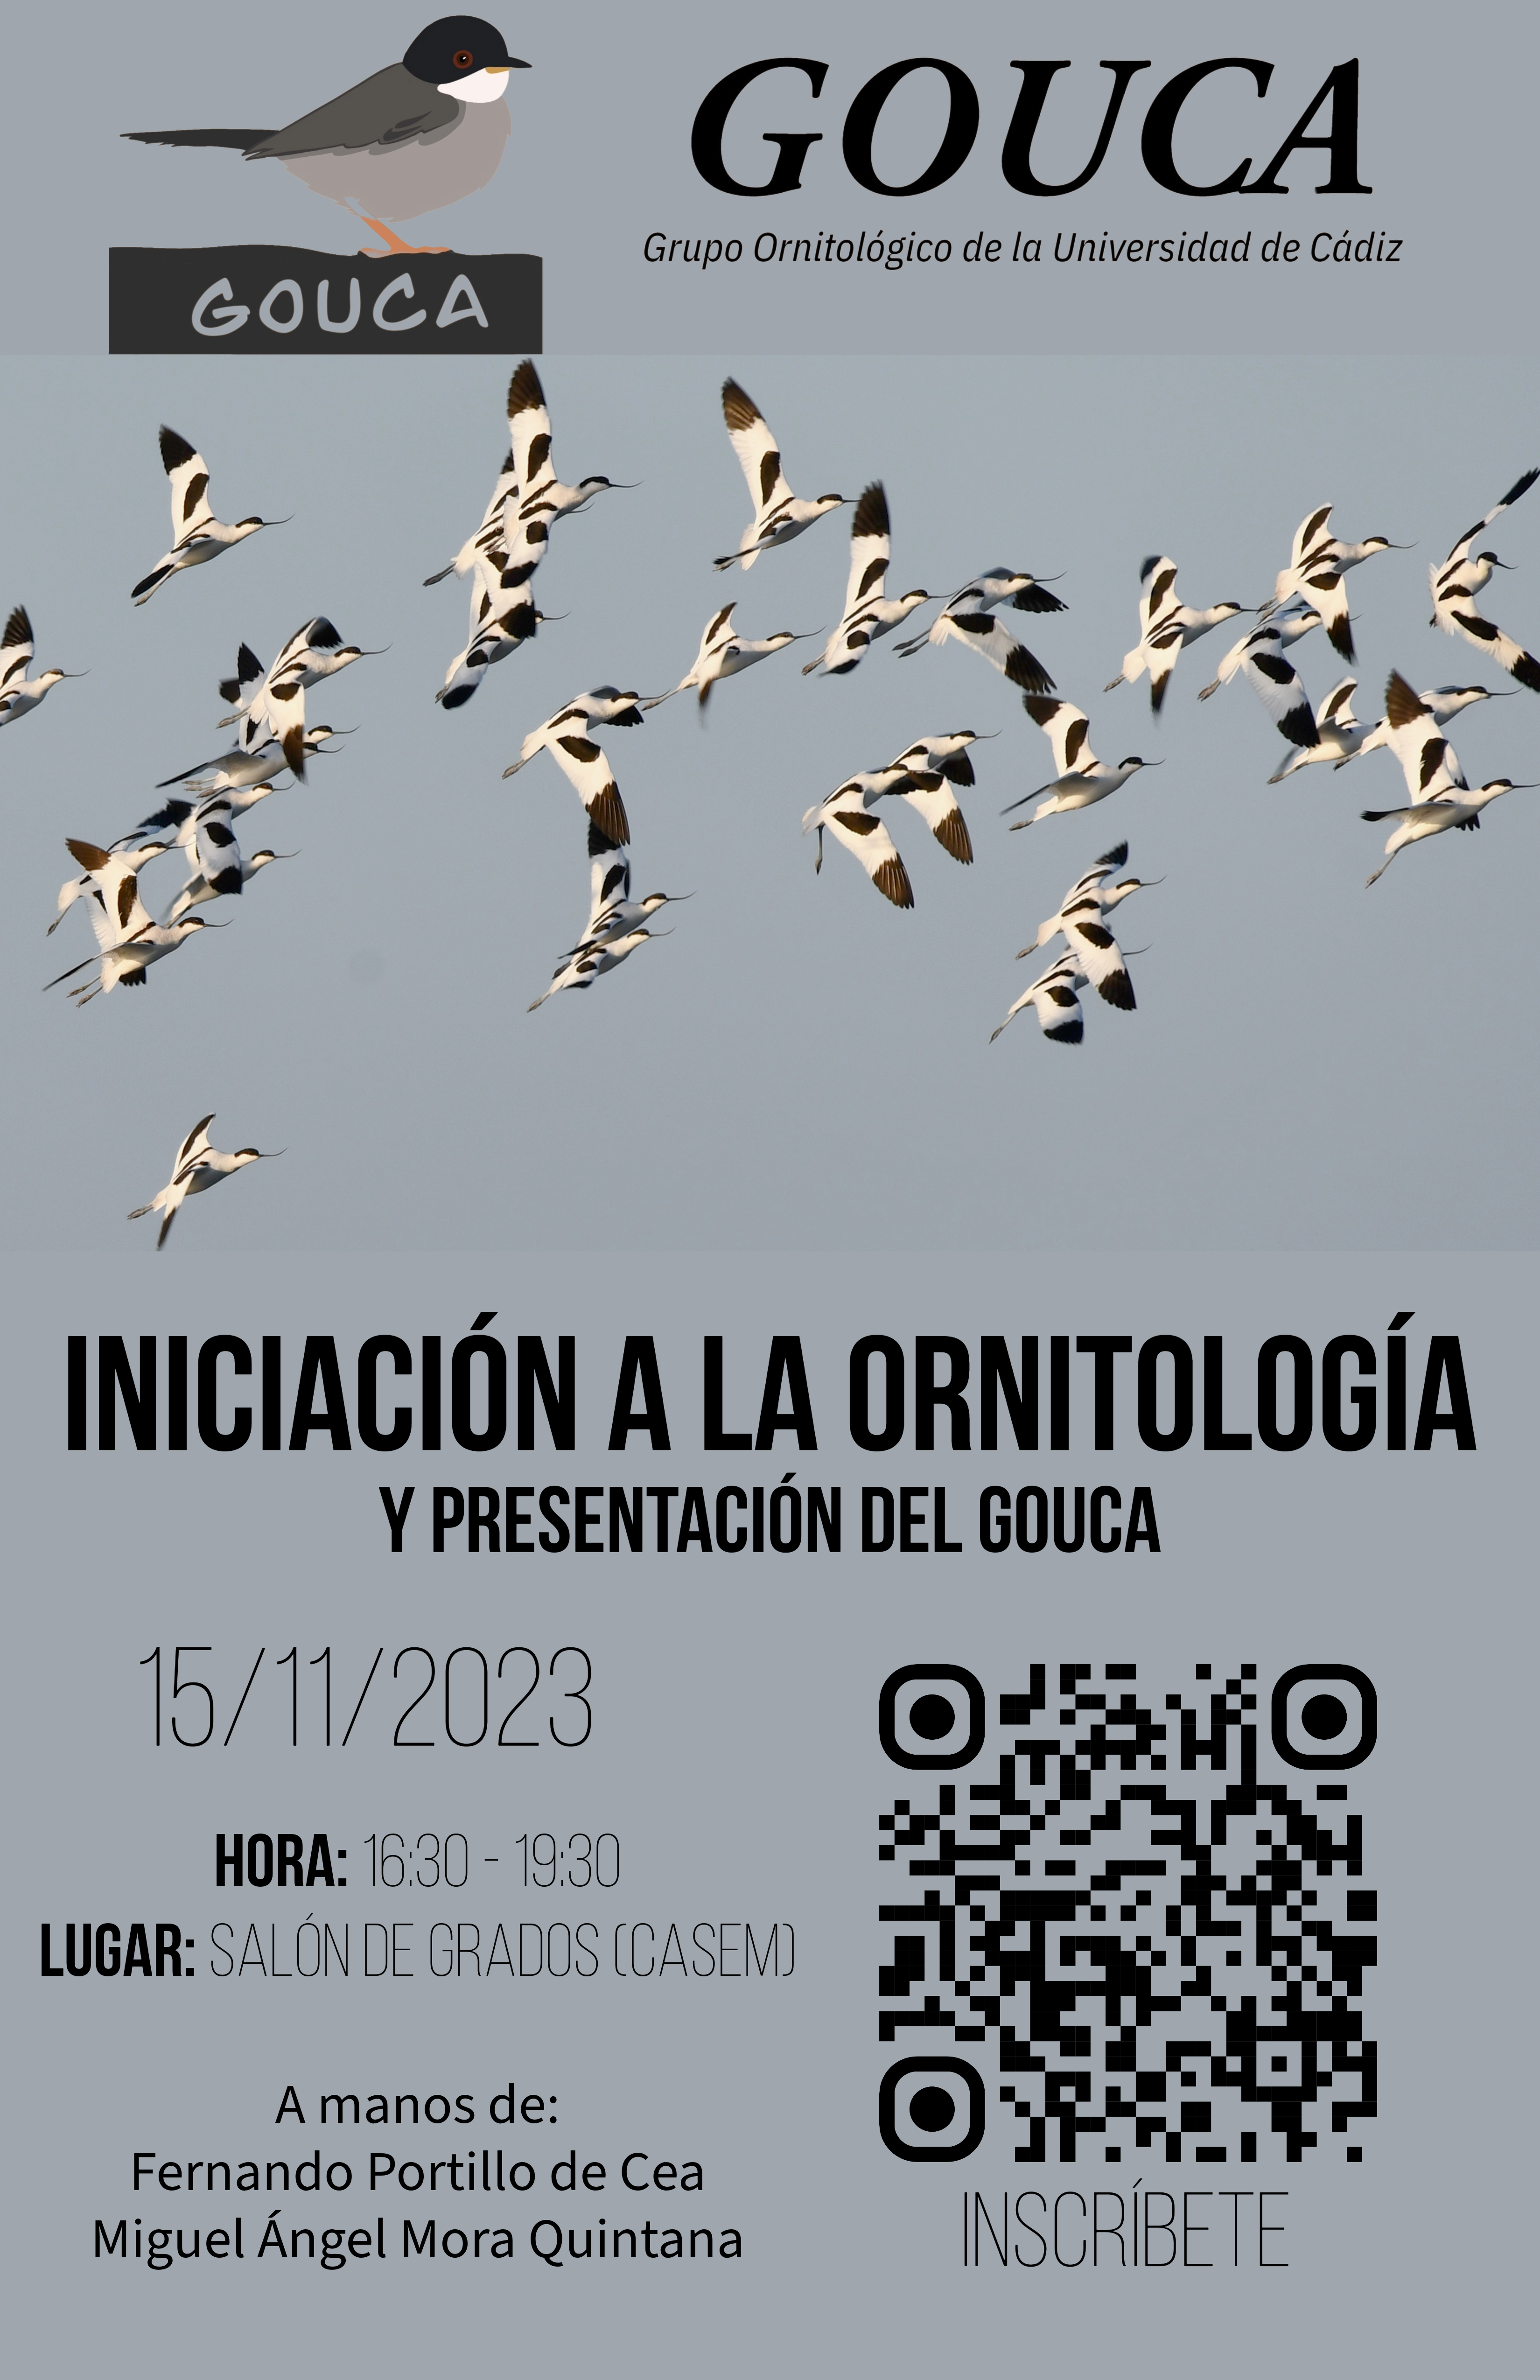 GOUCA: Grupo Ornitológico de la Universidad de Cádiz